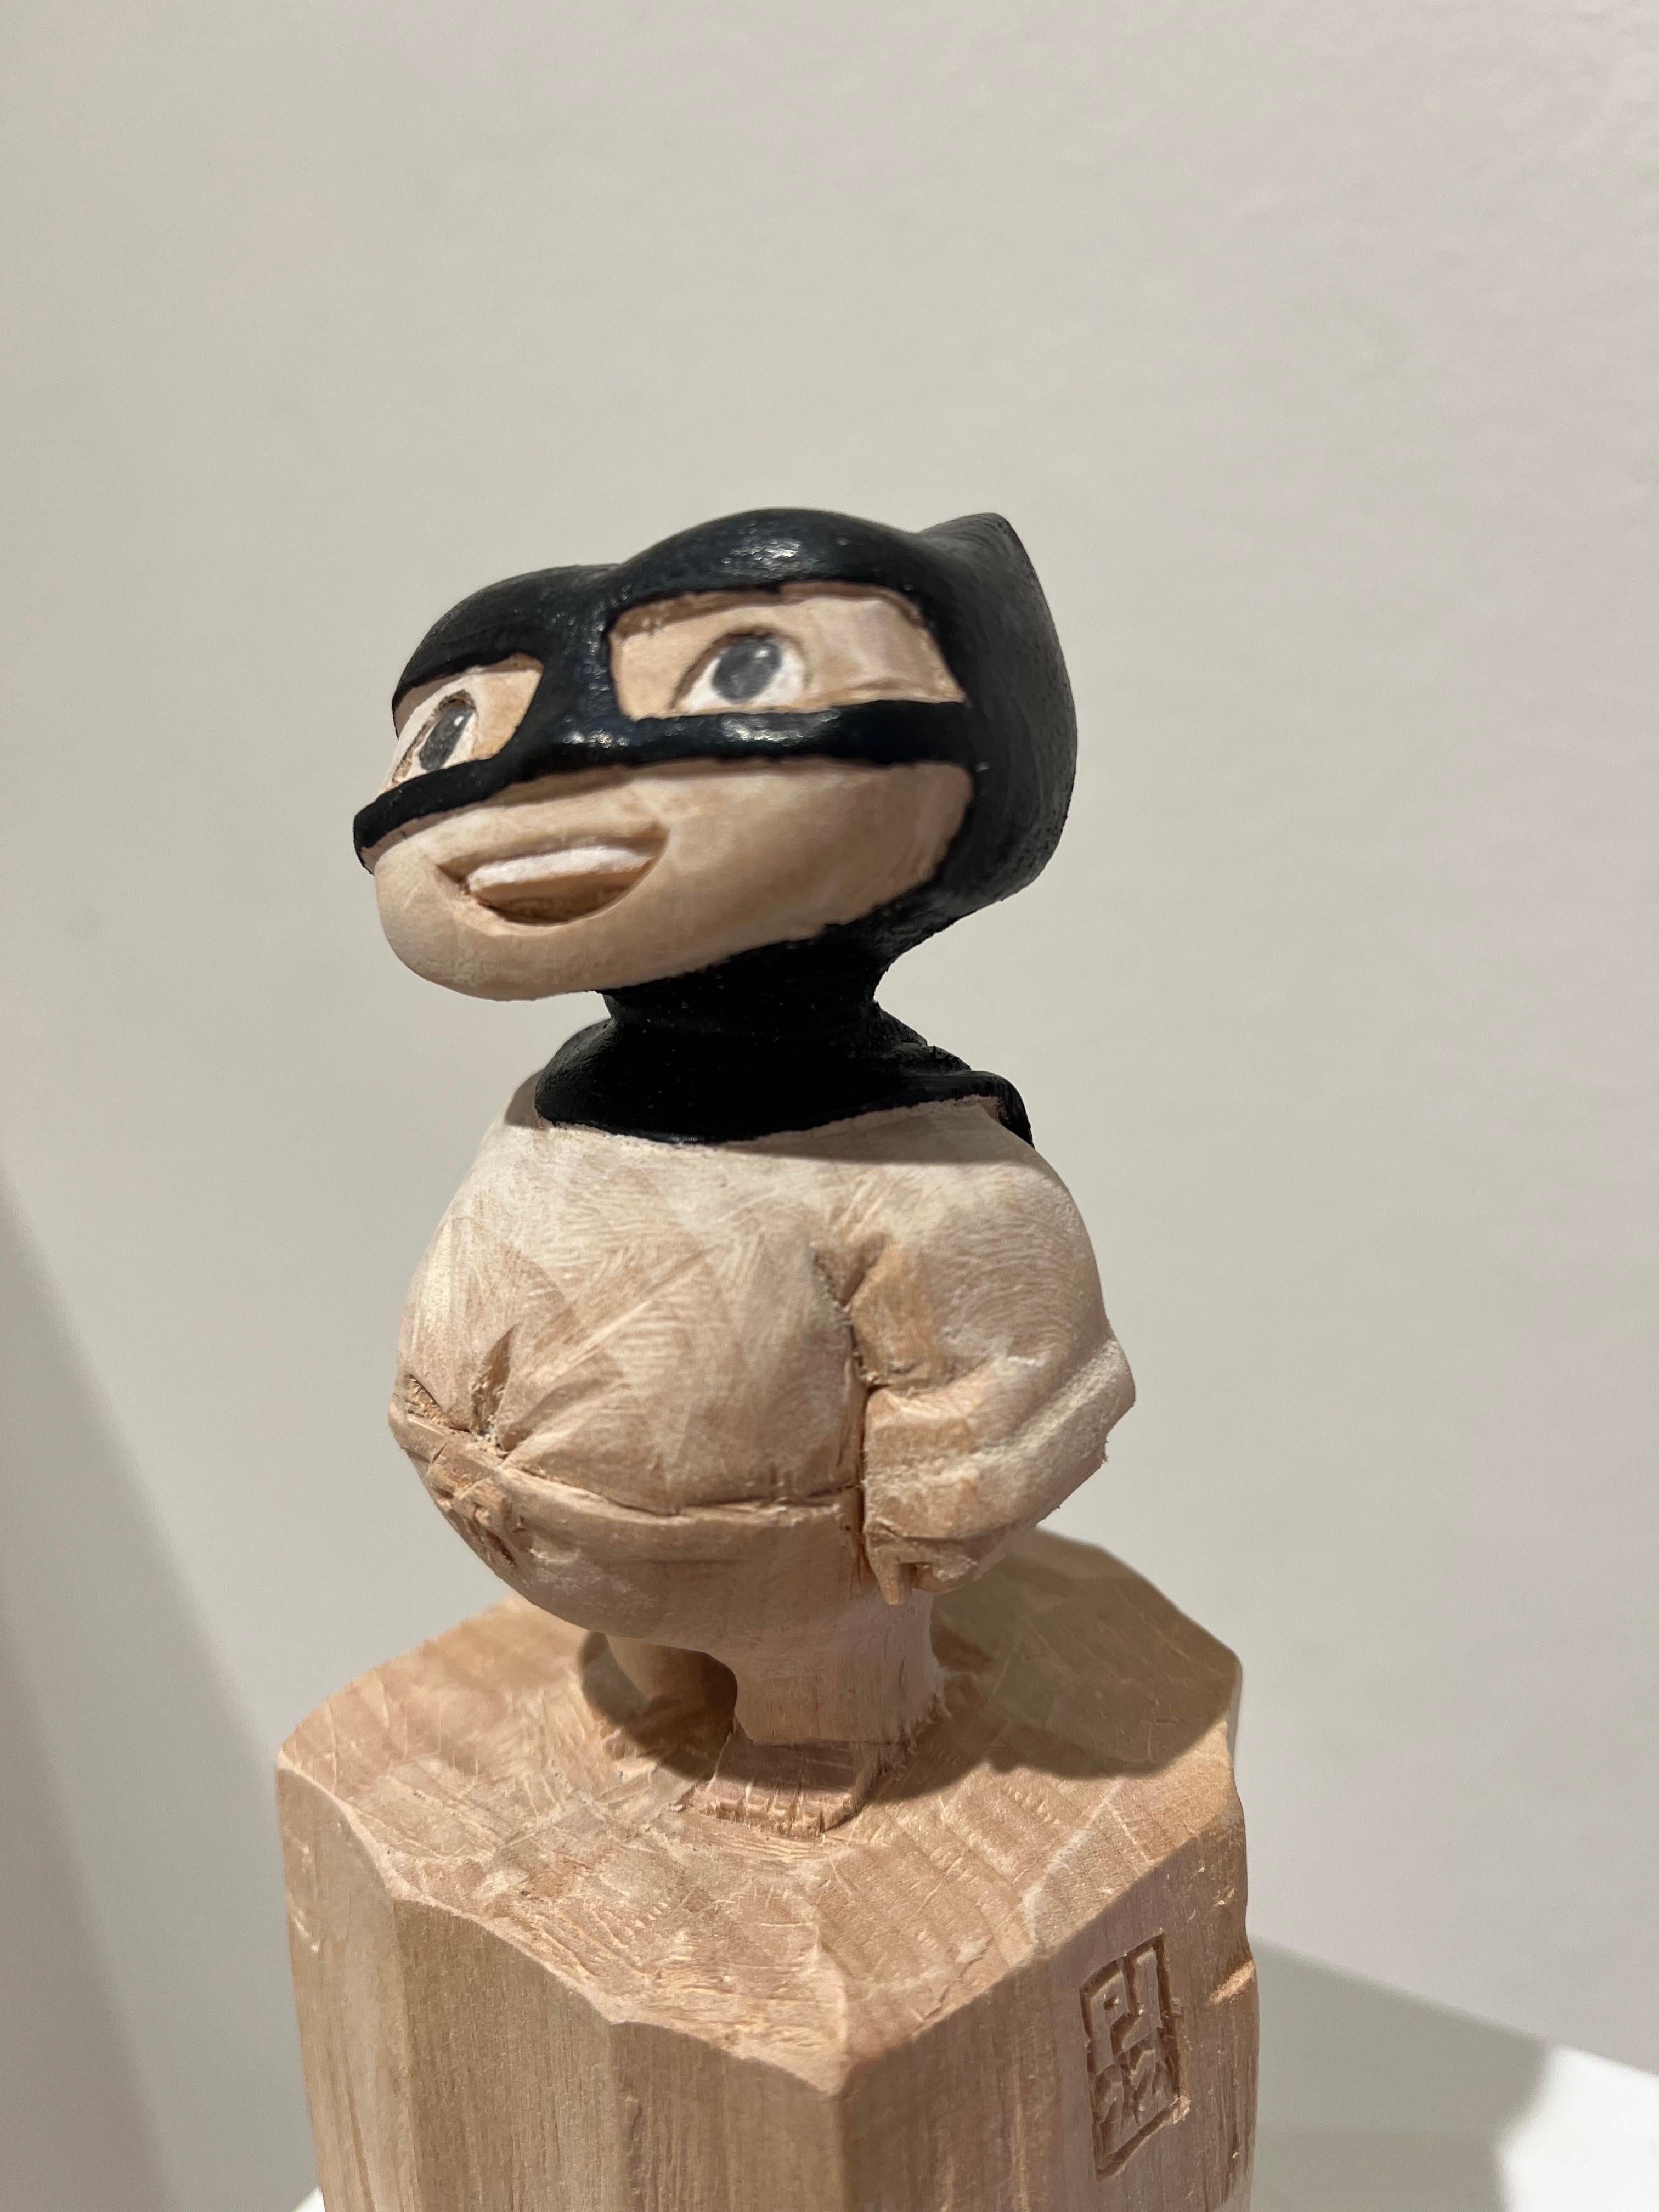 Philipp Liehr Figurative Sculpture - ''Superhero'' Unique Wooden Sculpture of a Boy with a Black Cape